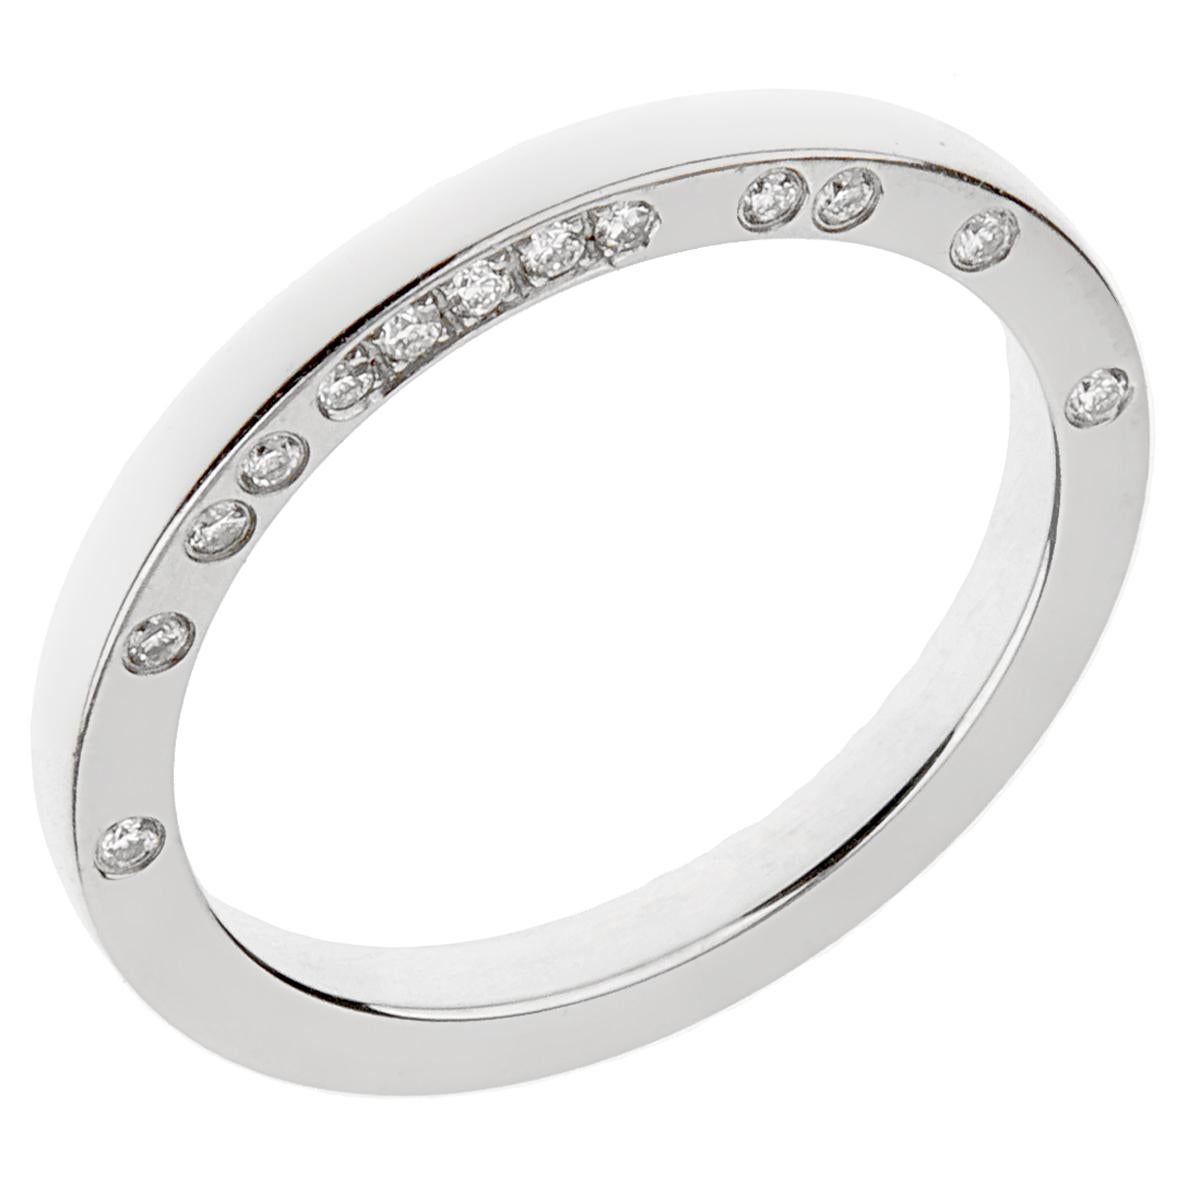 Ein schicker Boucheron-Diamantring mit runden Diamanten im Brillantschliff, die auf der Seite des Rings gefasst sind. Der Ring zeigt 13 der feinsten Boucheron-Diamanten im runden Brillantschliff, gefasst in Platin. Der Ring misst eine Größe eu 52 /